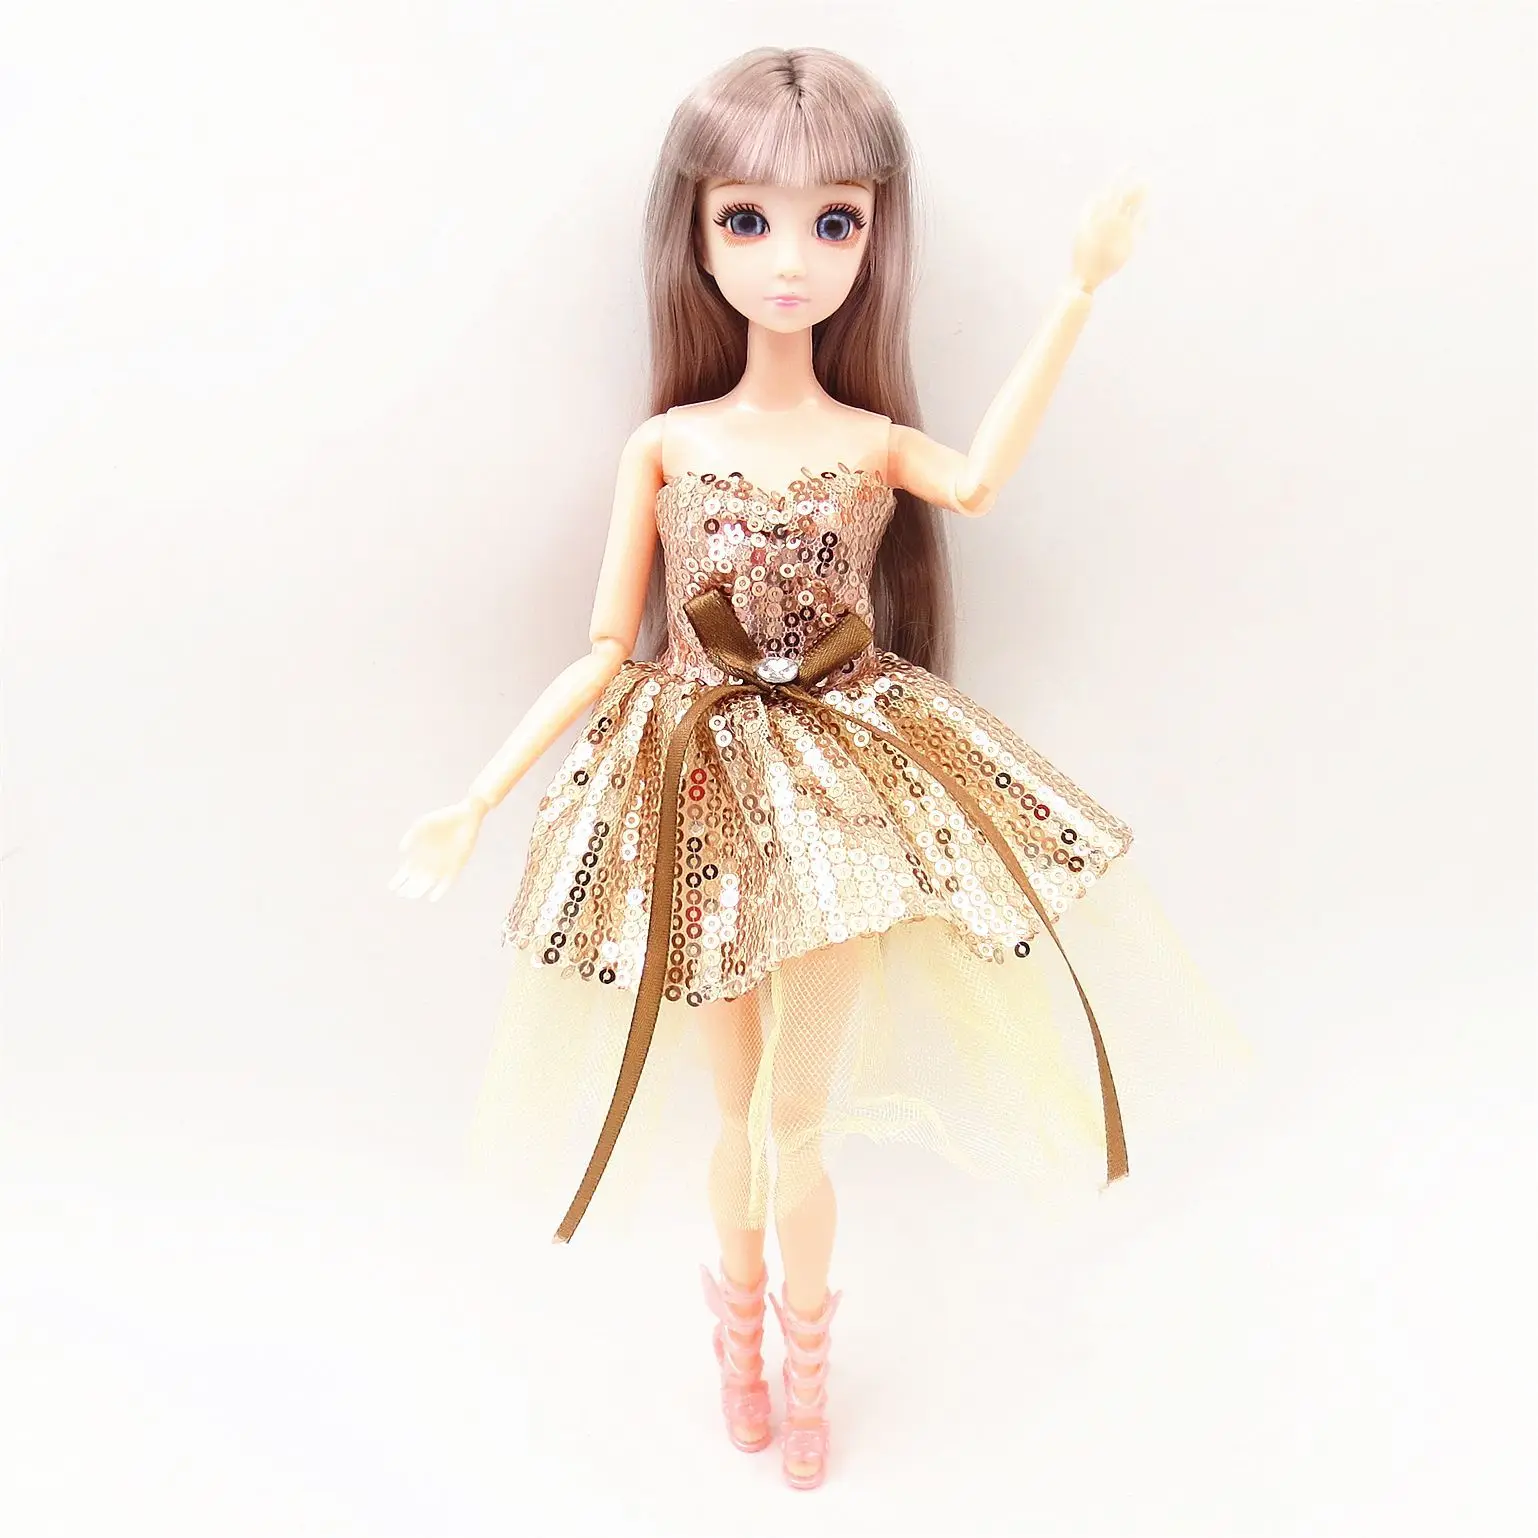 30 см платье куклы модное платье одежда для Барби Diy игрушка для девочки подарок кукла пальто аксессуары для 1/8 11 дюймов кукла